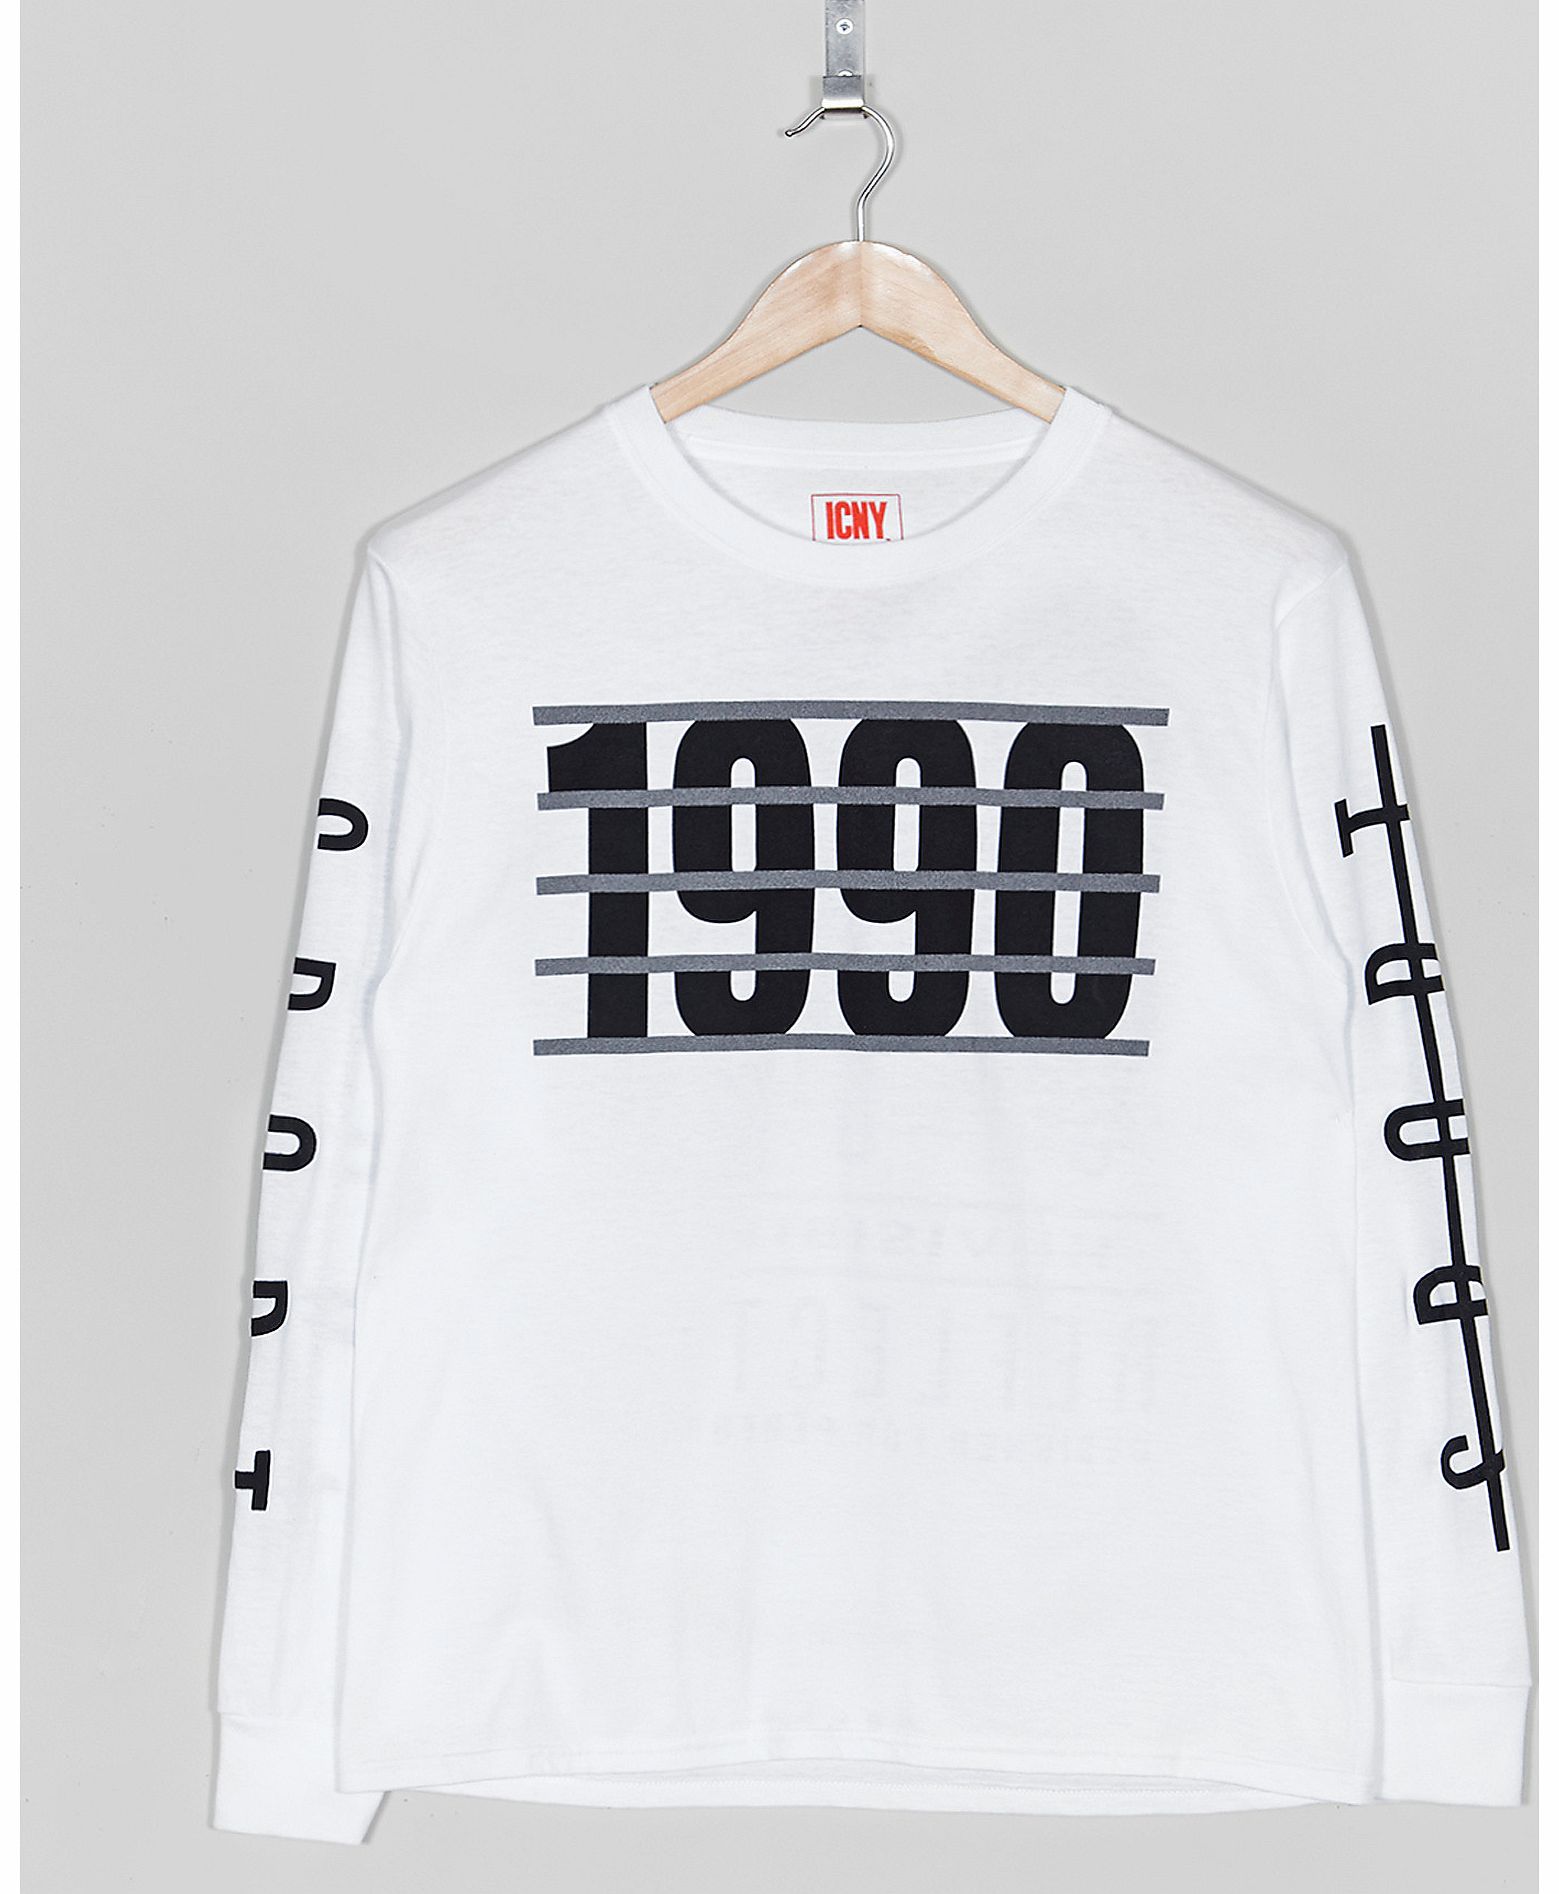 ICNY 1990 Long Sleeve T-Shirt